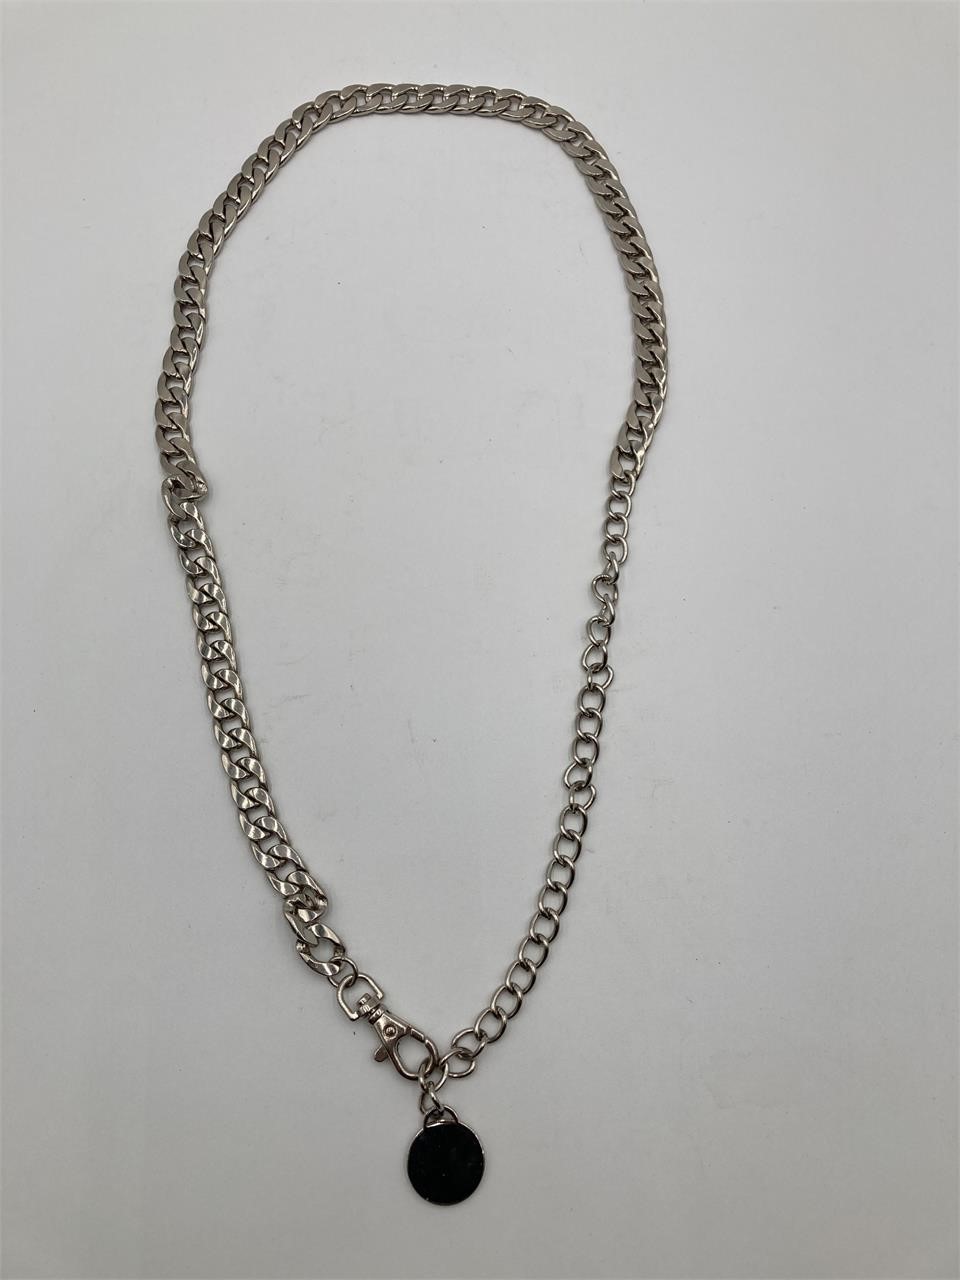 38” Silver Tone Chain Necklace